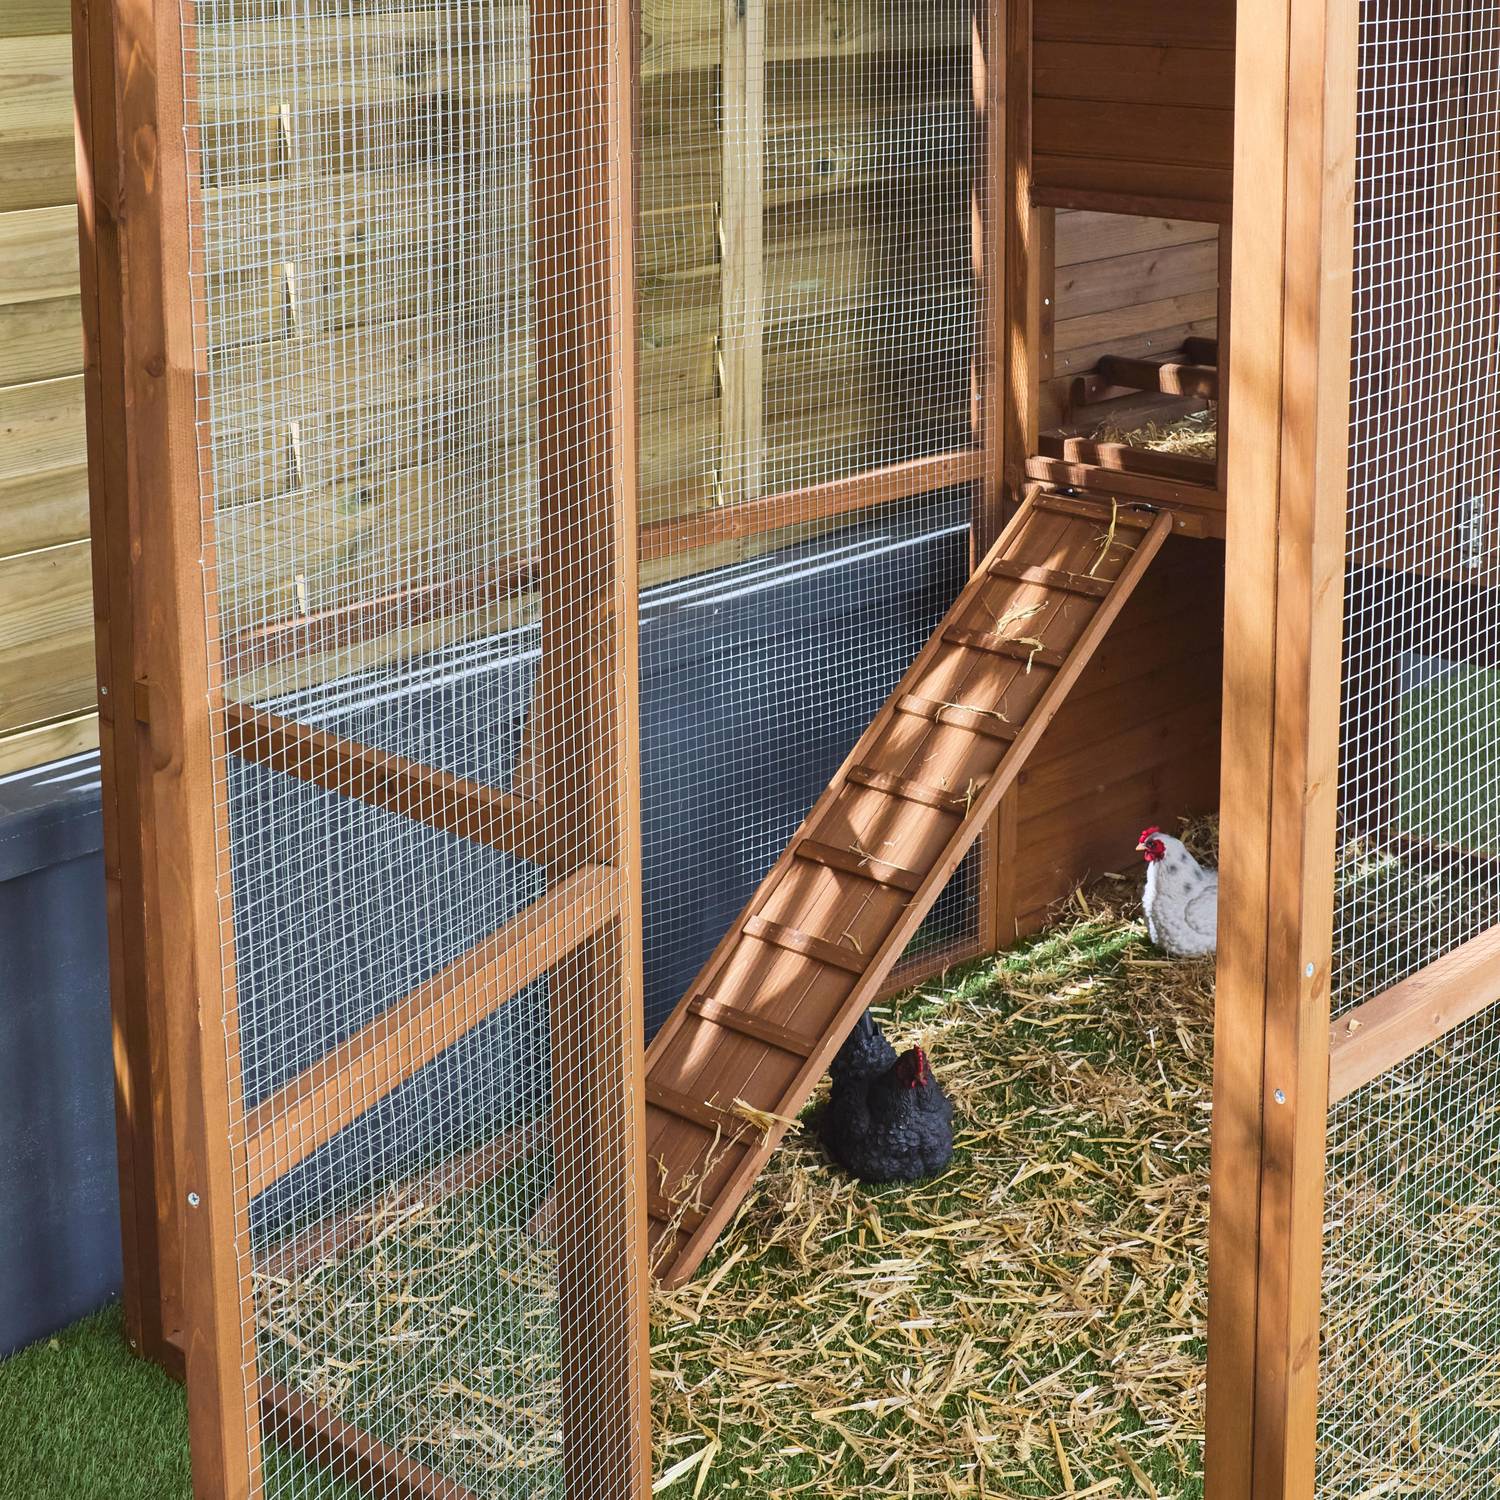 Pollaio in legno COTENTINE, da 6 a 8 galline, gabbia per galline con recinto Photo3